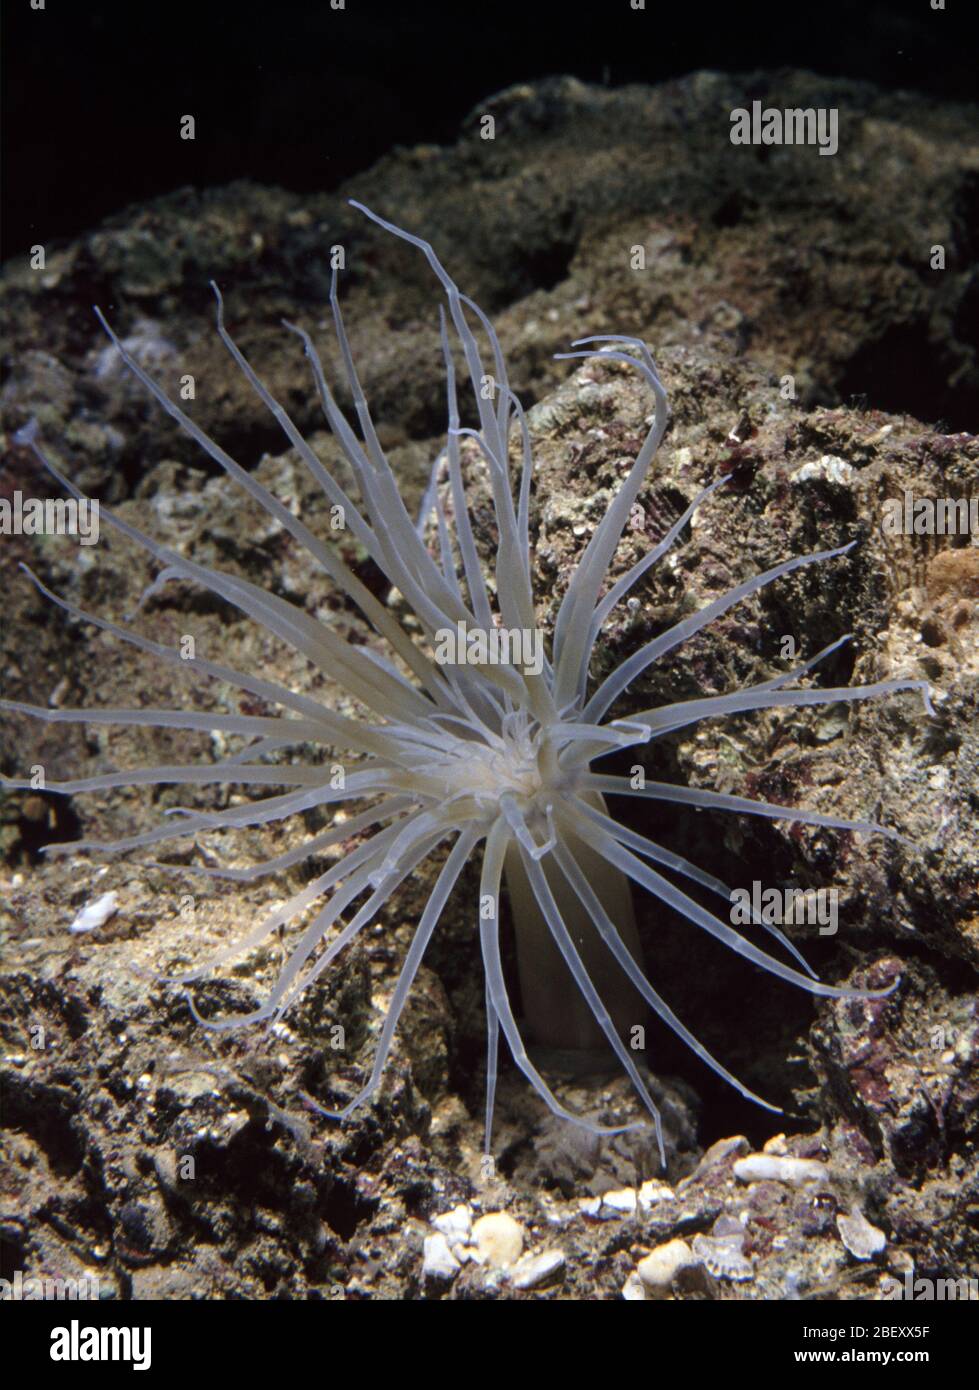 Juvenile Mediterranean Tube anemone, Cerianthus membranaceus Stock Photo